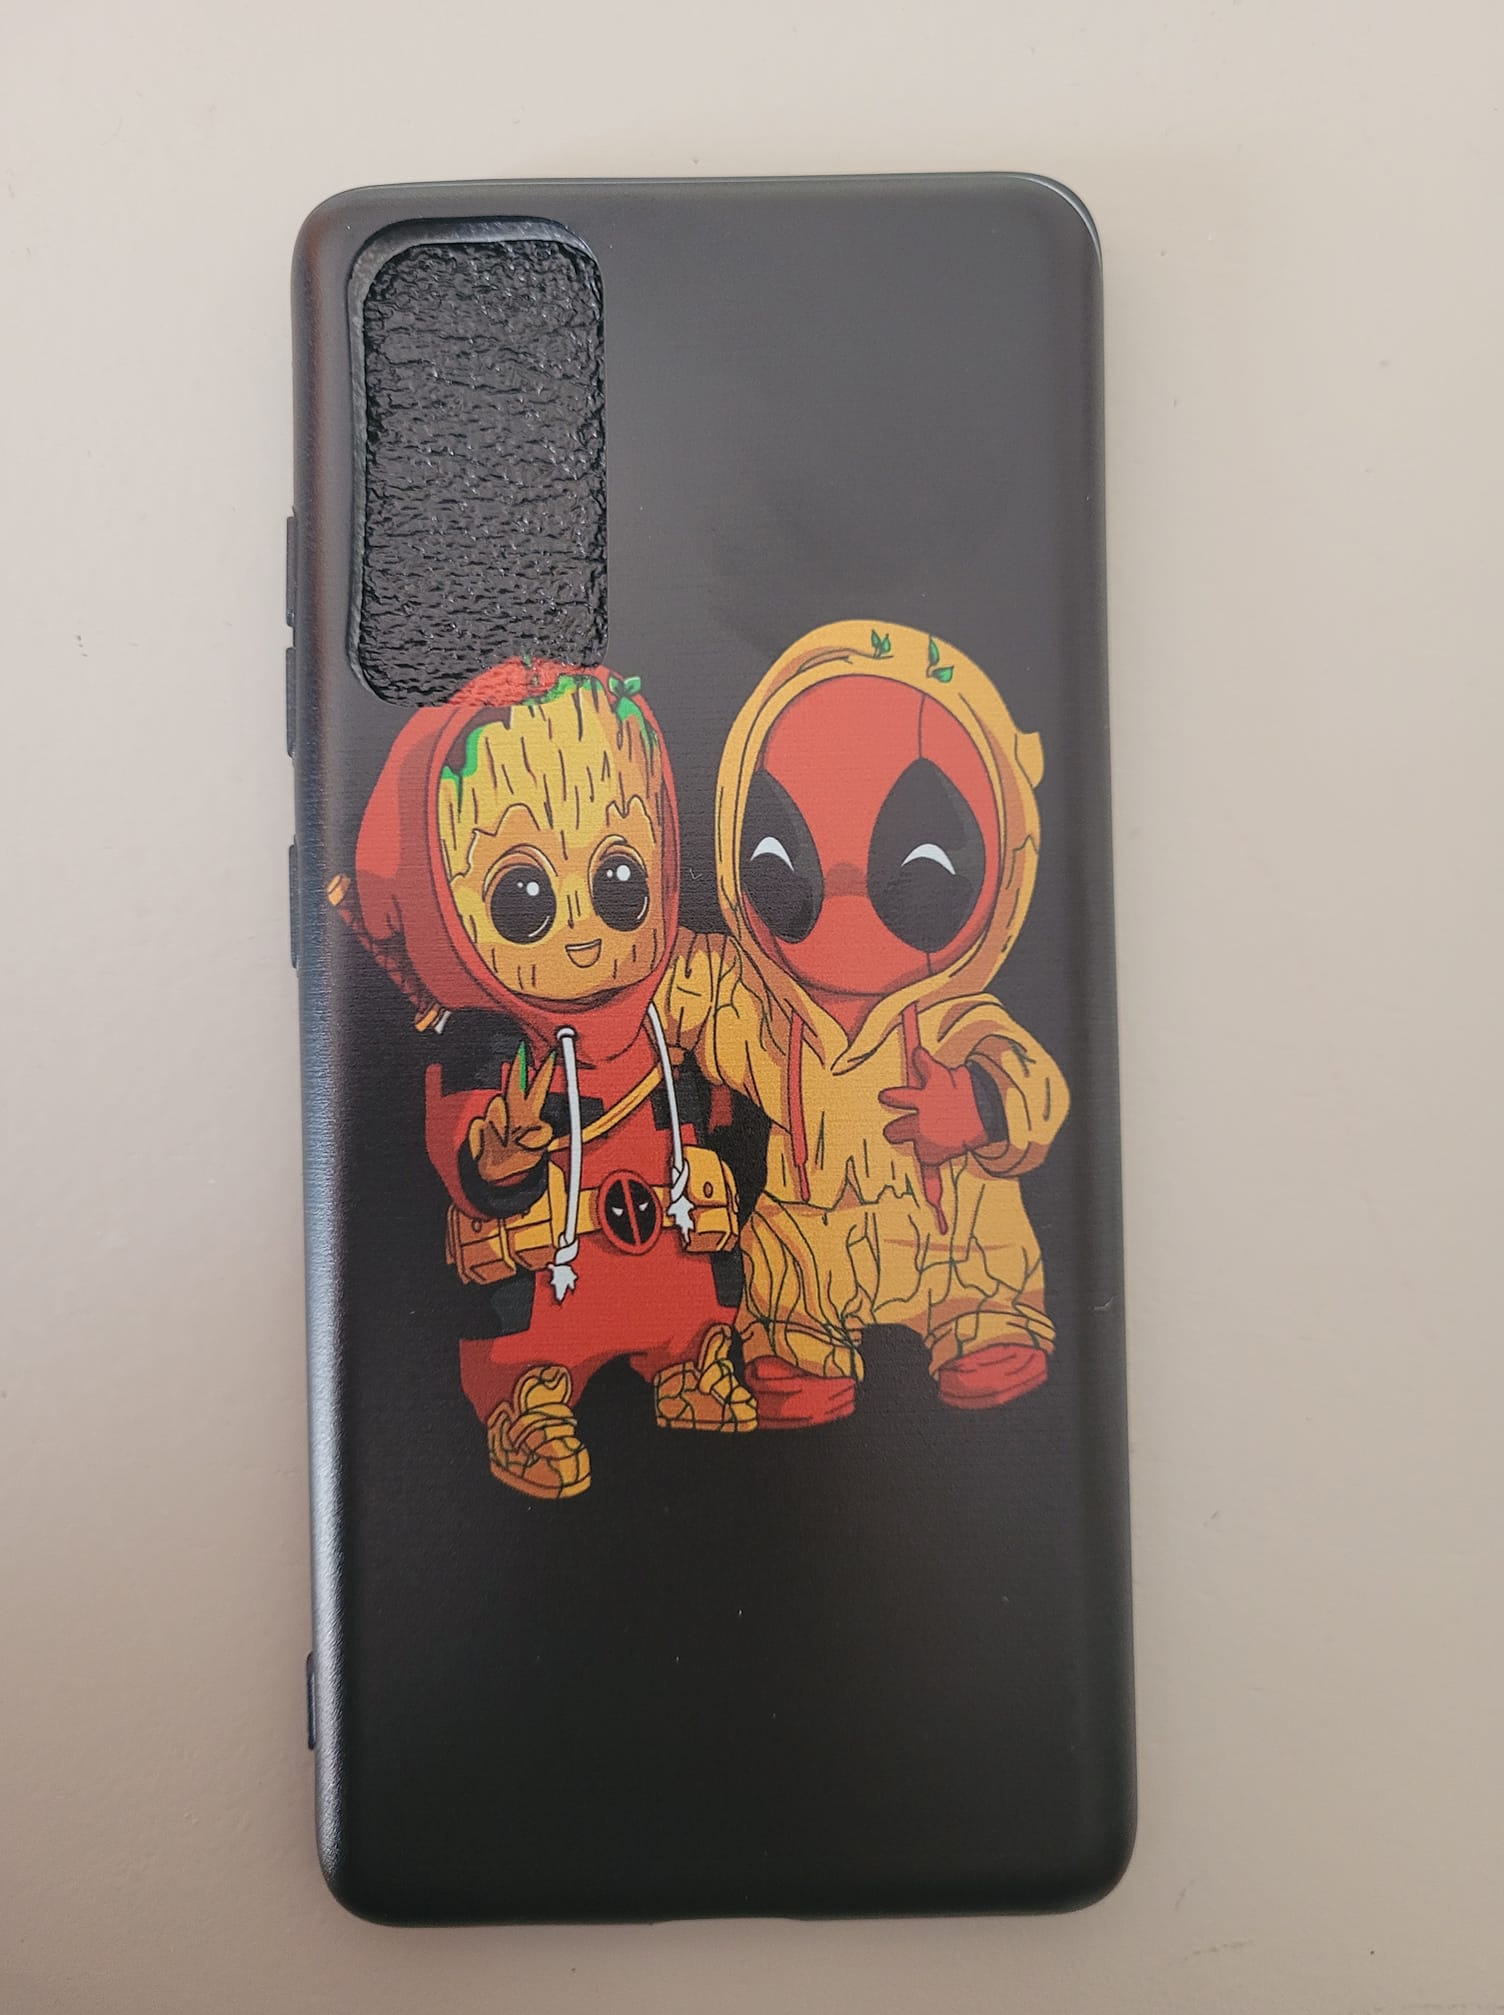 Deadpool Masque Inspiré Design/Super Héros Bande Dessinée Collection eSwish Coque Gel TPU de Coque pour Razer Phone 2 